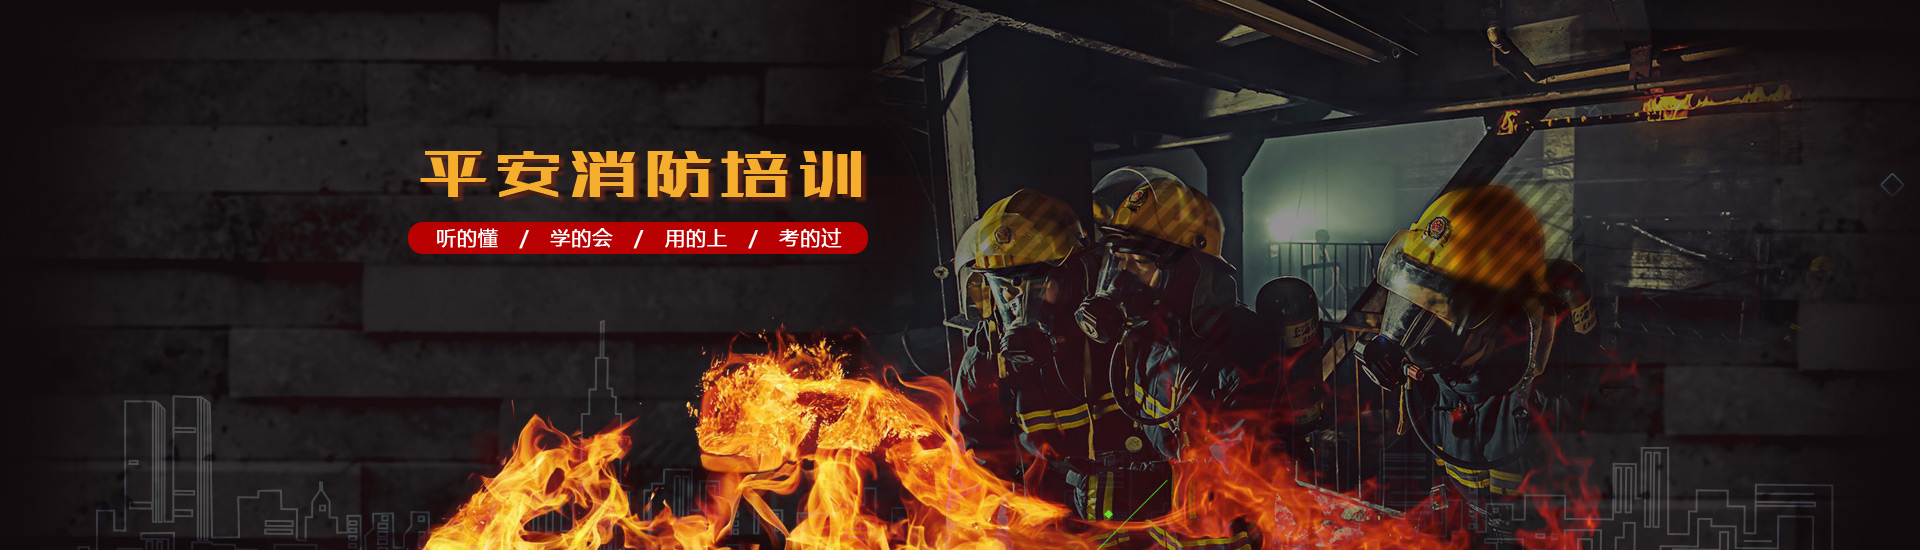 徐州消防培训